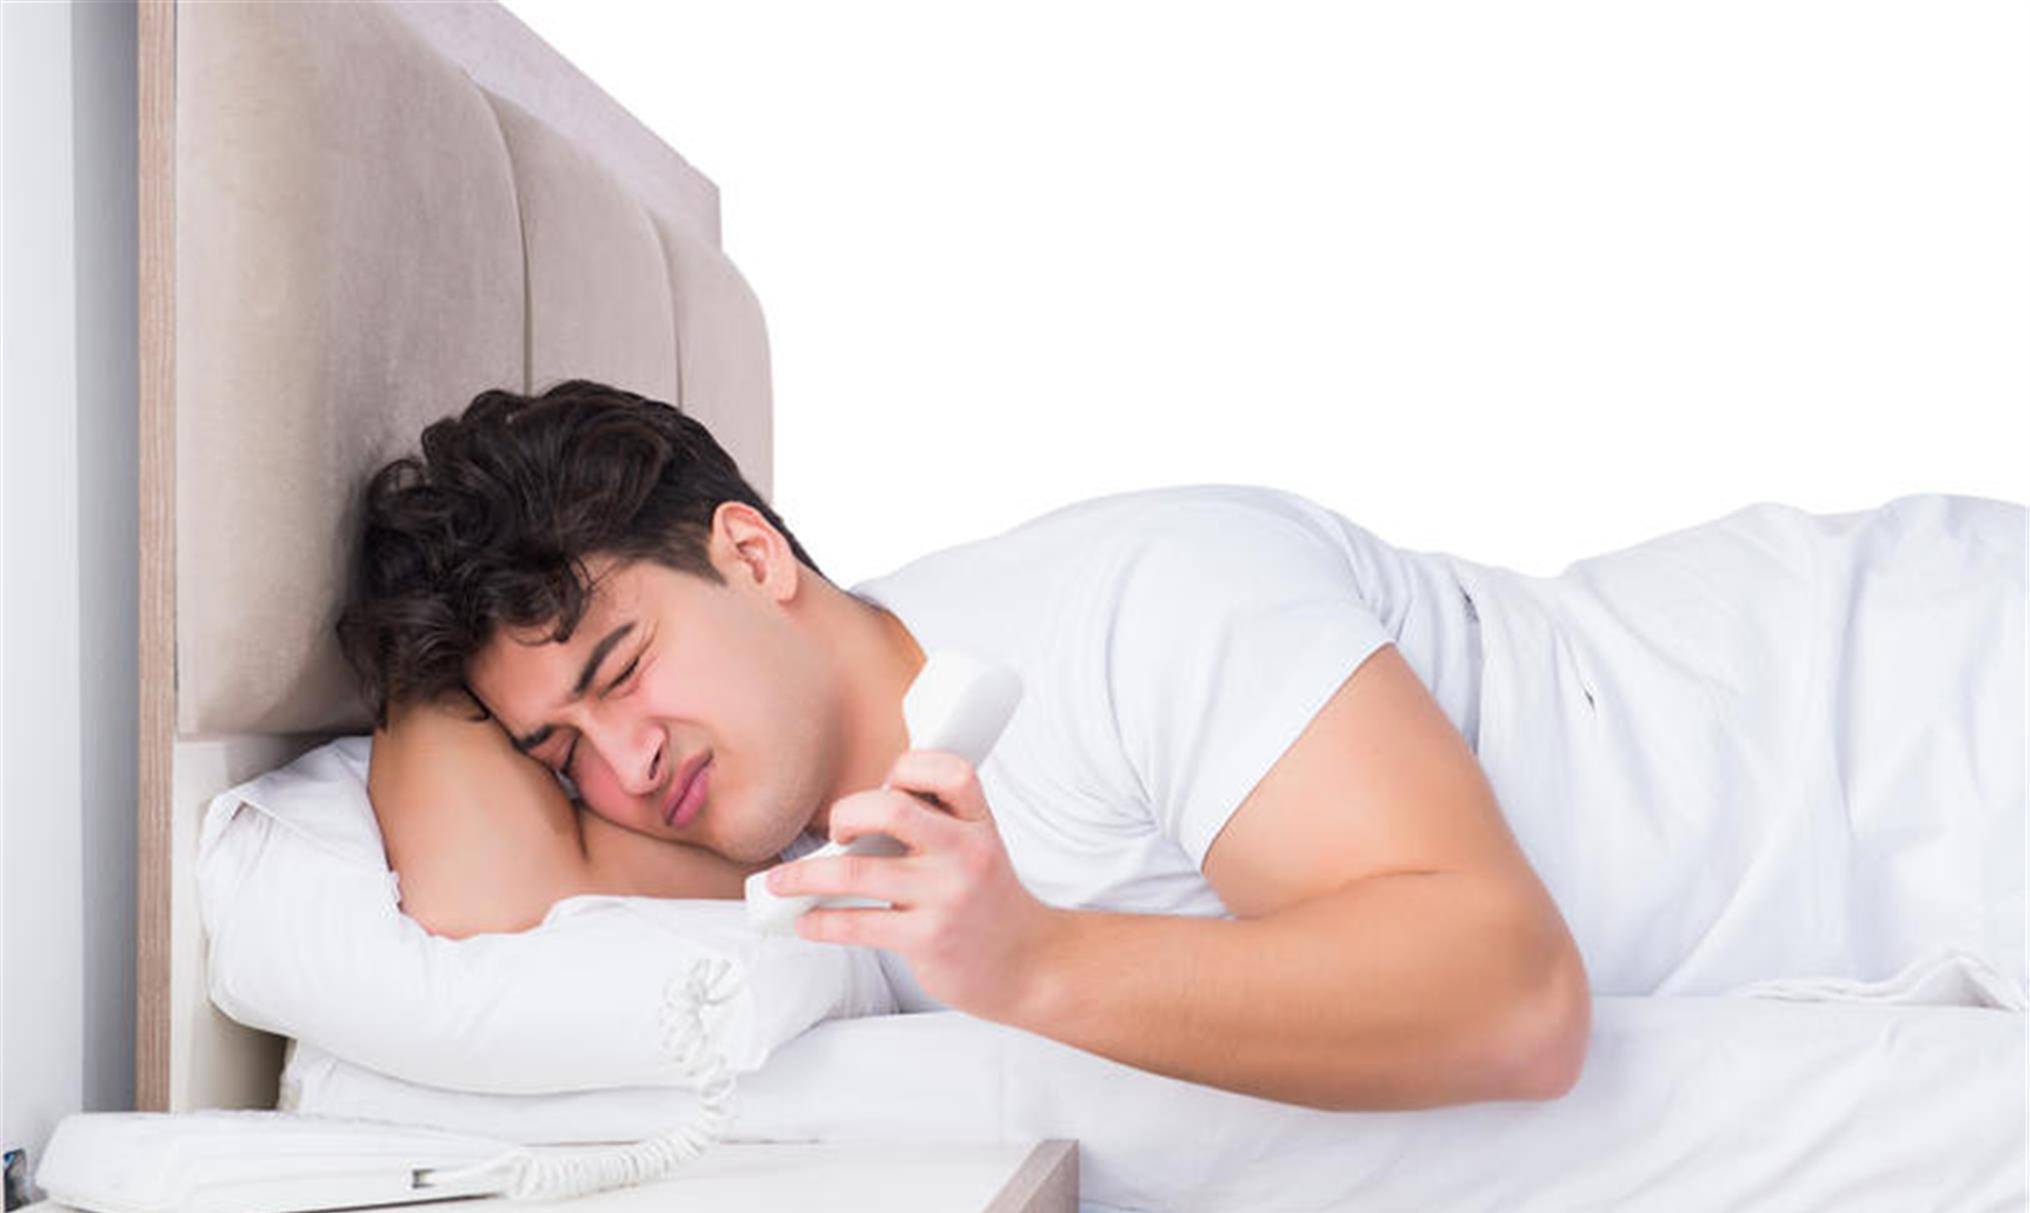 睡觉时有这3种表现,可能是肝病在 作祟 ,一发现要重视